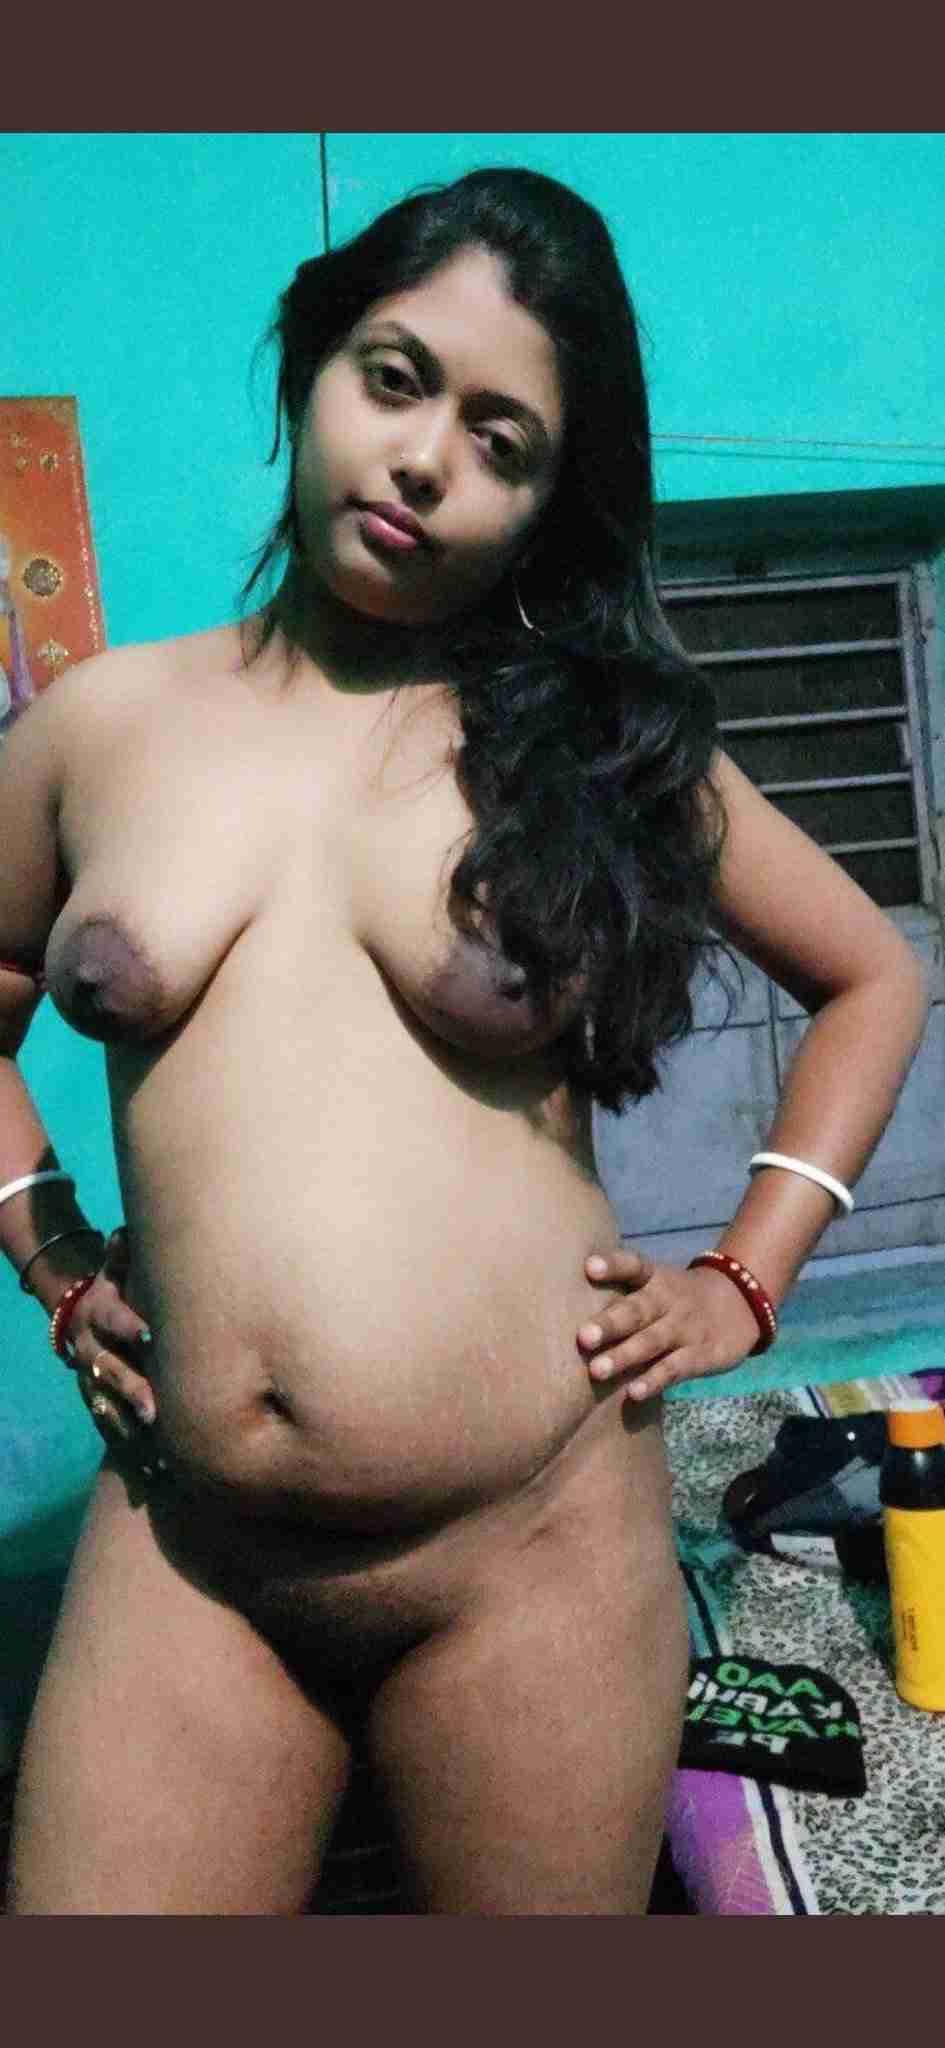 Bengali village girl naked photos for her lover - FSI Blog